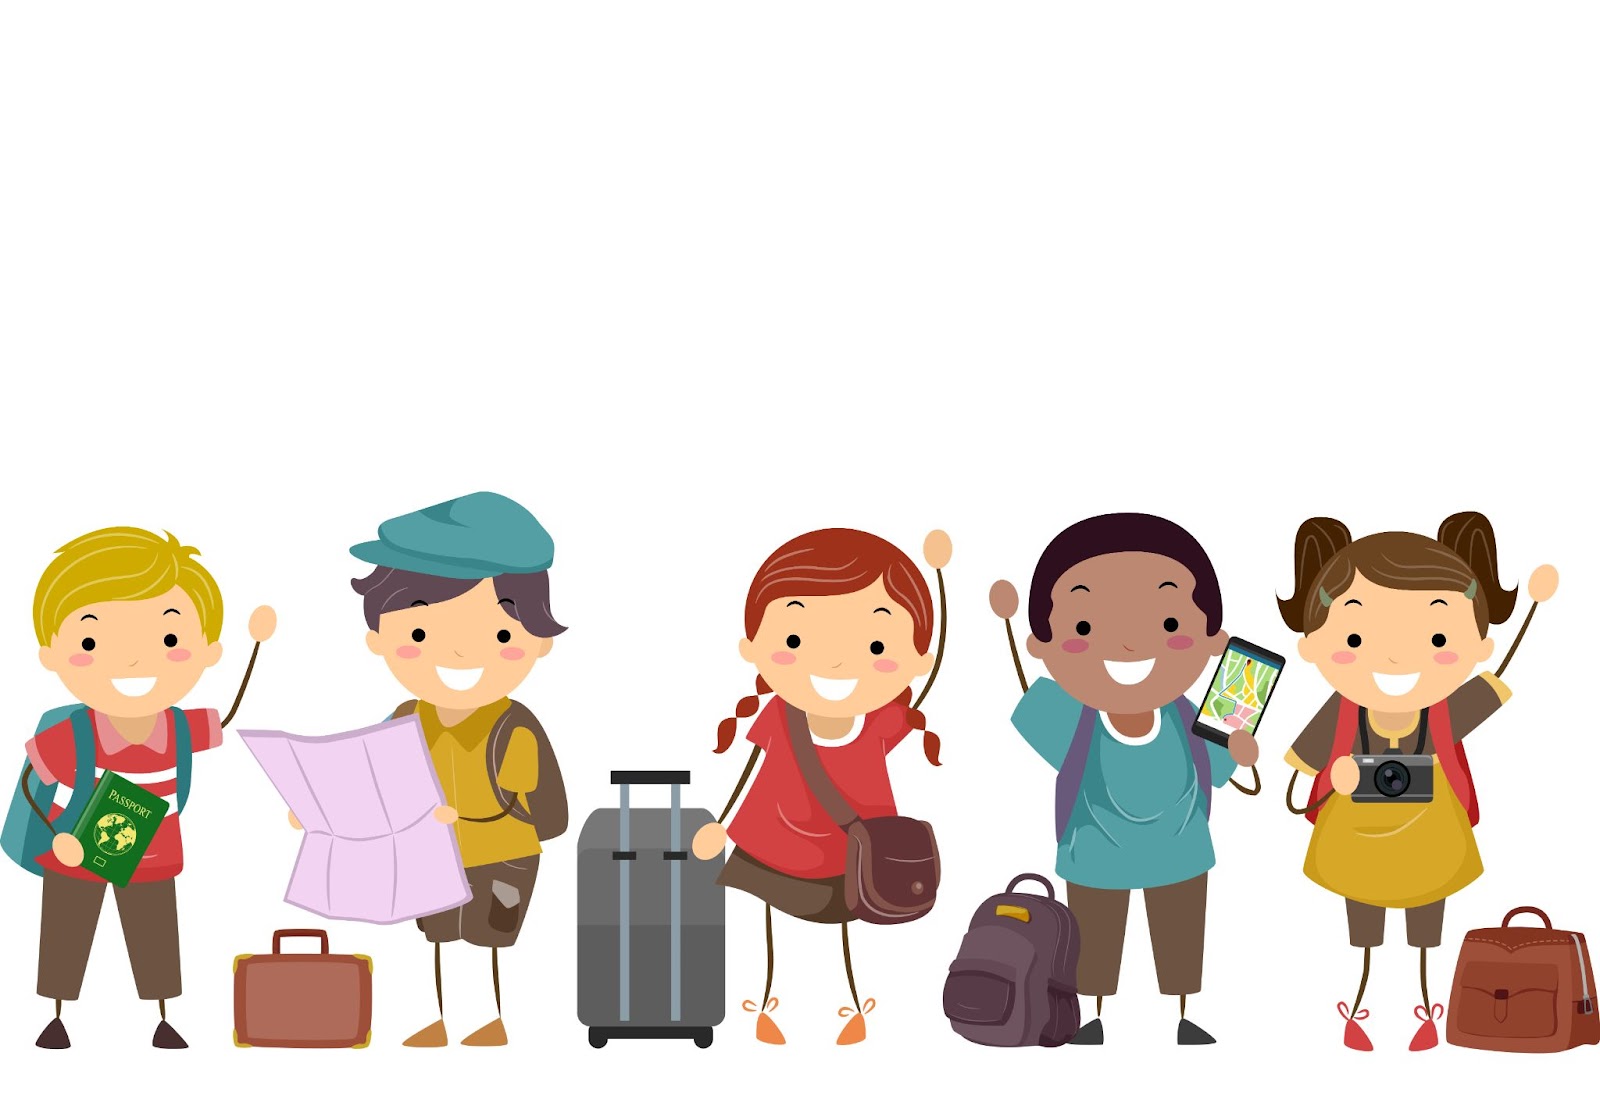 Illustrazione di Stickman Kids con mappa, borsa, macchina fotografica e bagagli pronti per viaggiare